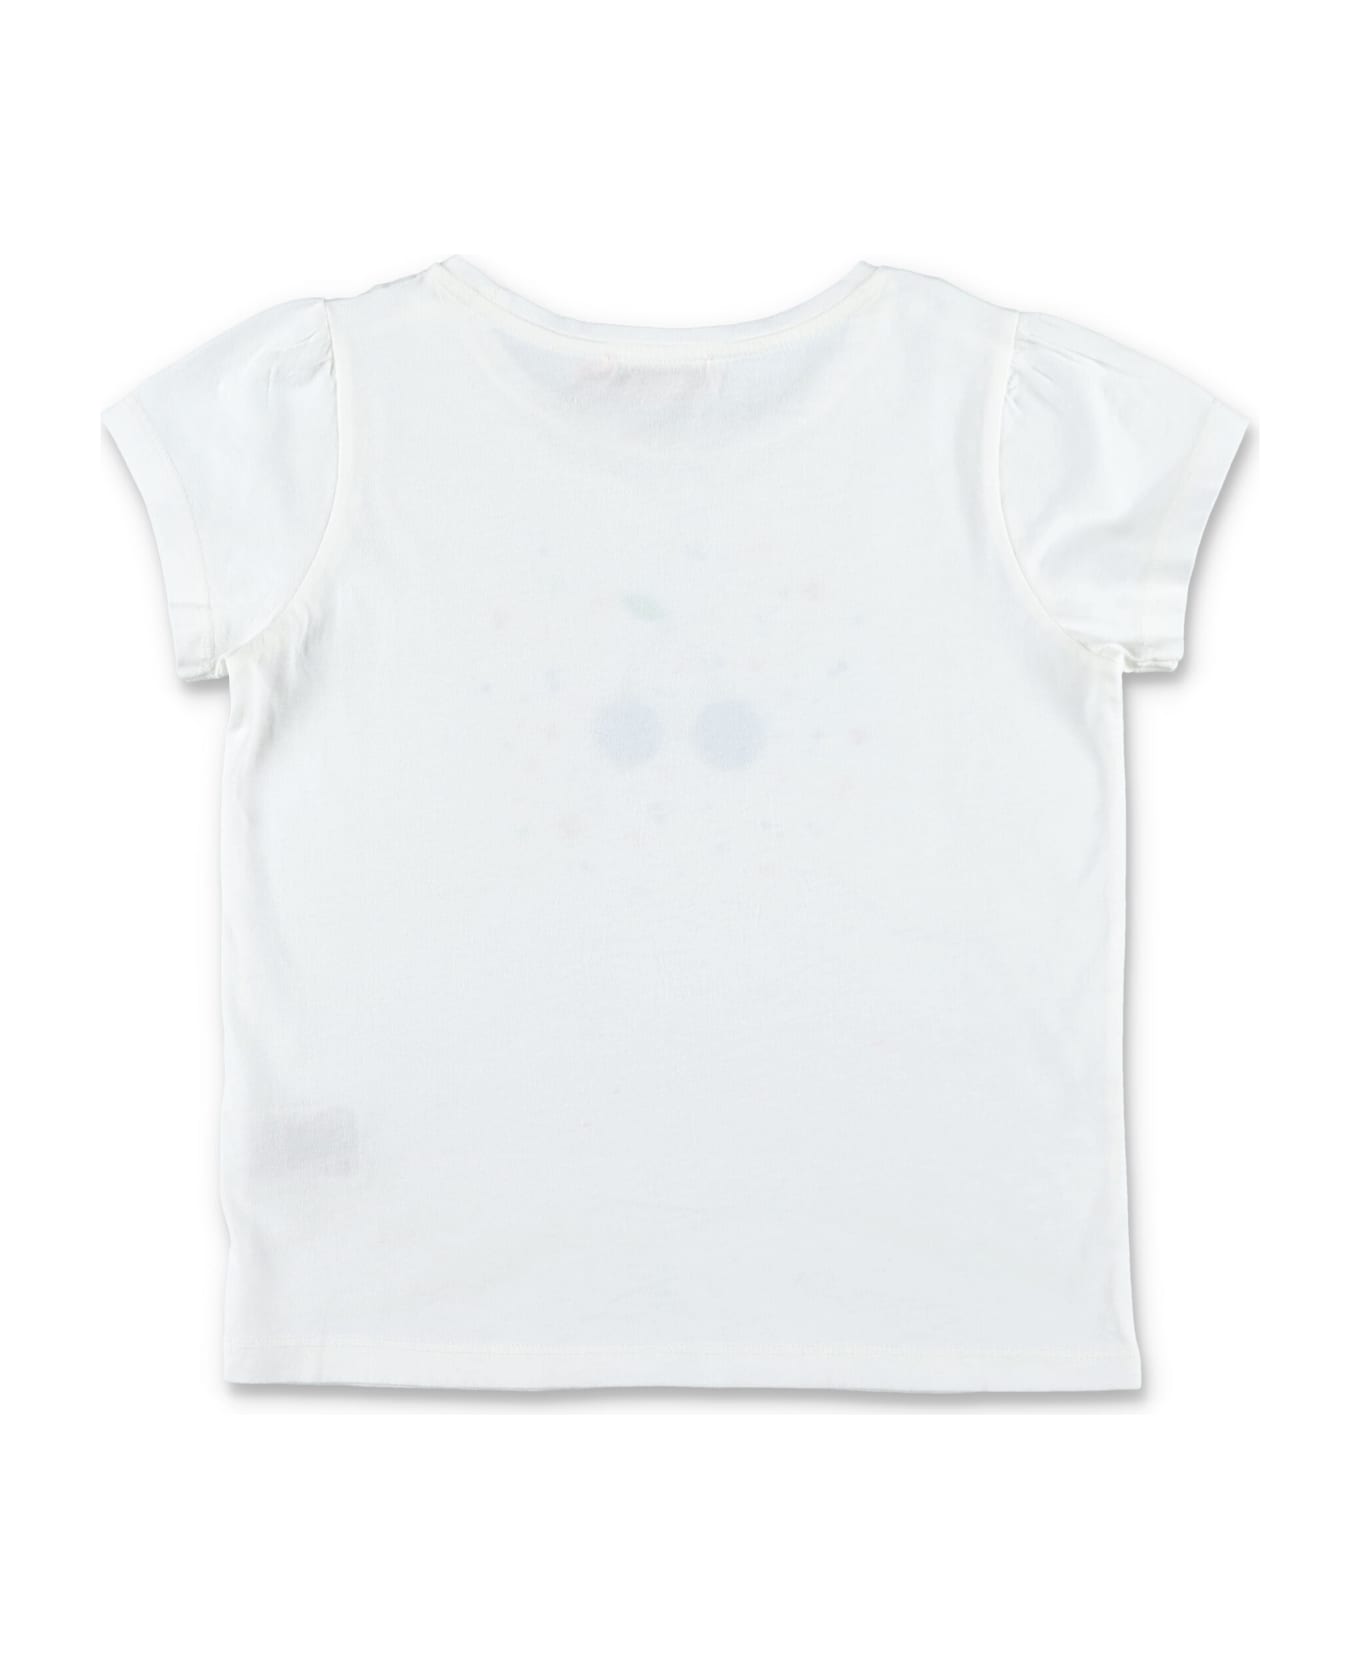 Bonpoint Capricia T-shirt - WHITE